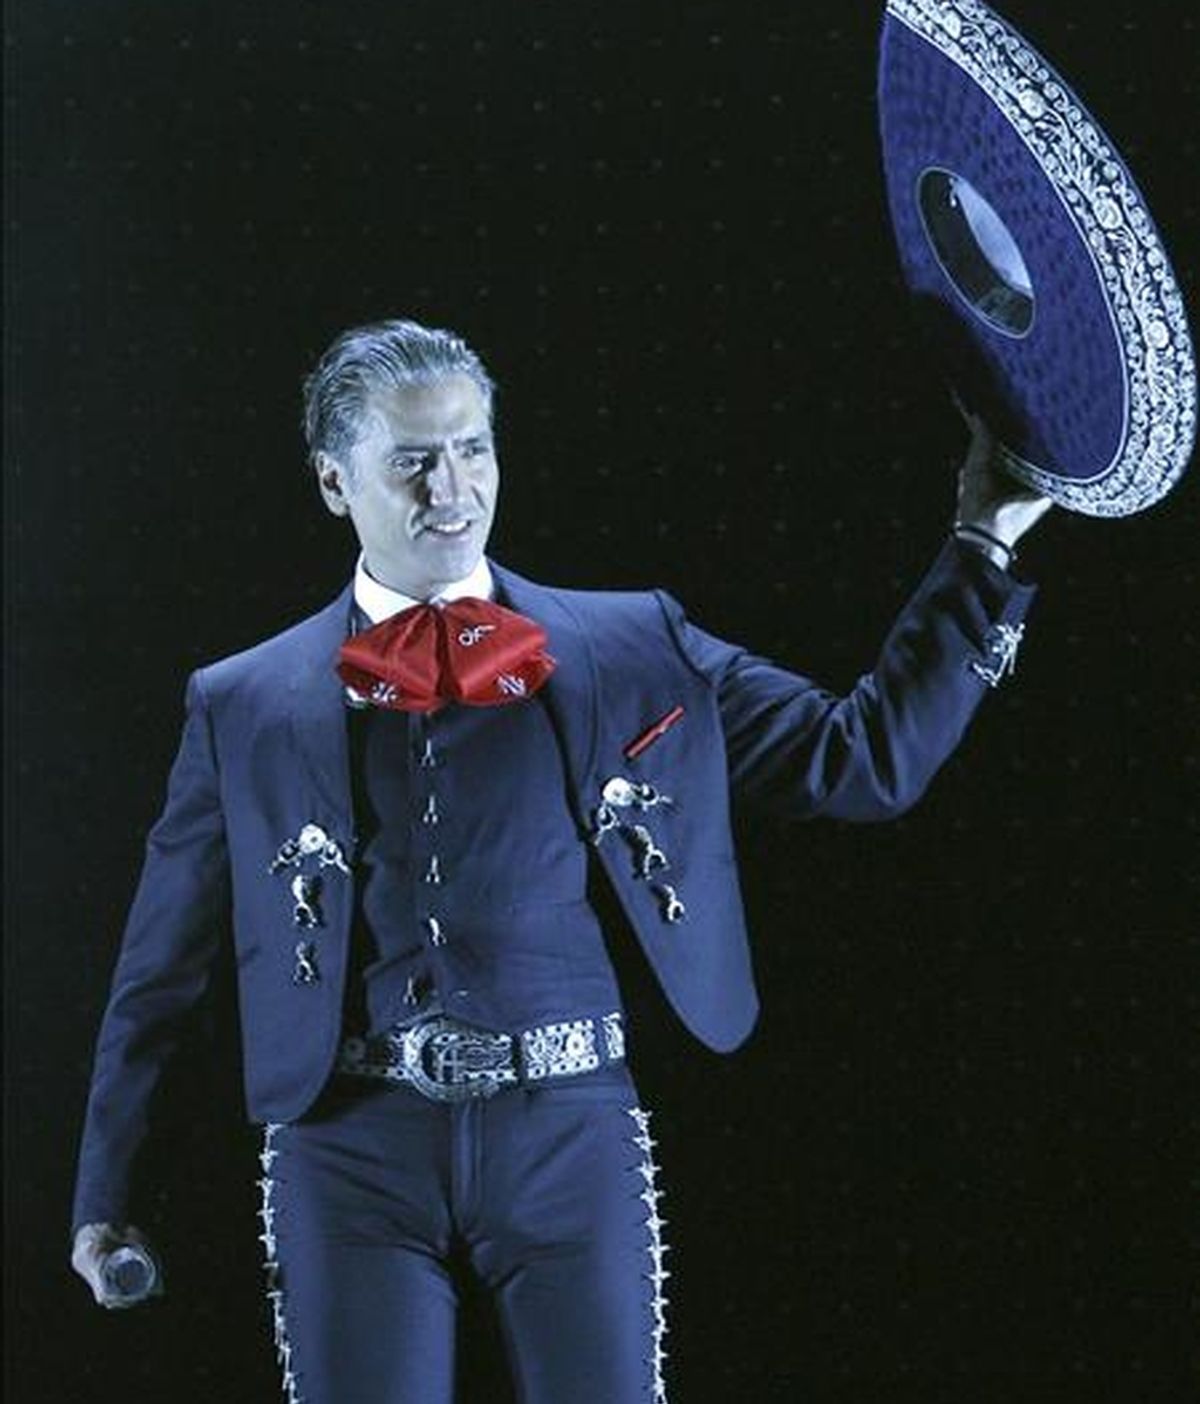 El cantante mexicano, Alejandro Fernández, durante el concierto que ha ofrecido esta noche en el Palacio de los Deportes de Madrid, incluido en su gira "Tour dos mundos". EFE